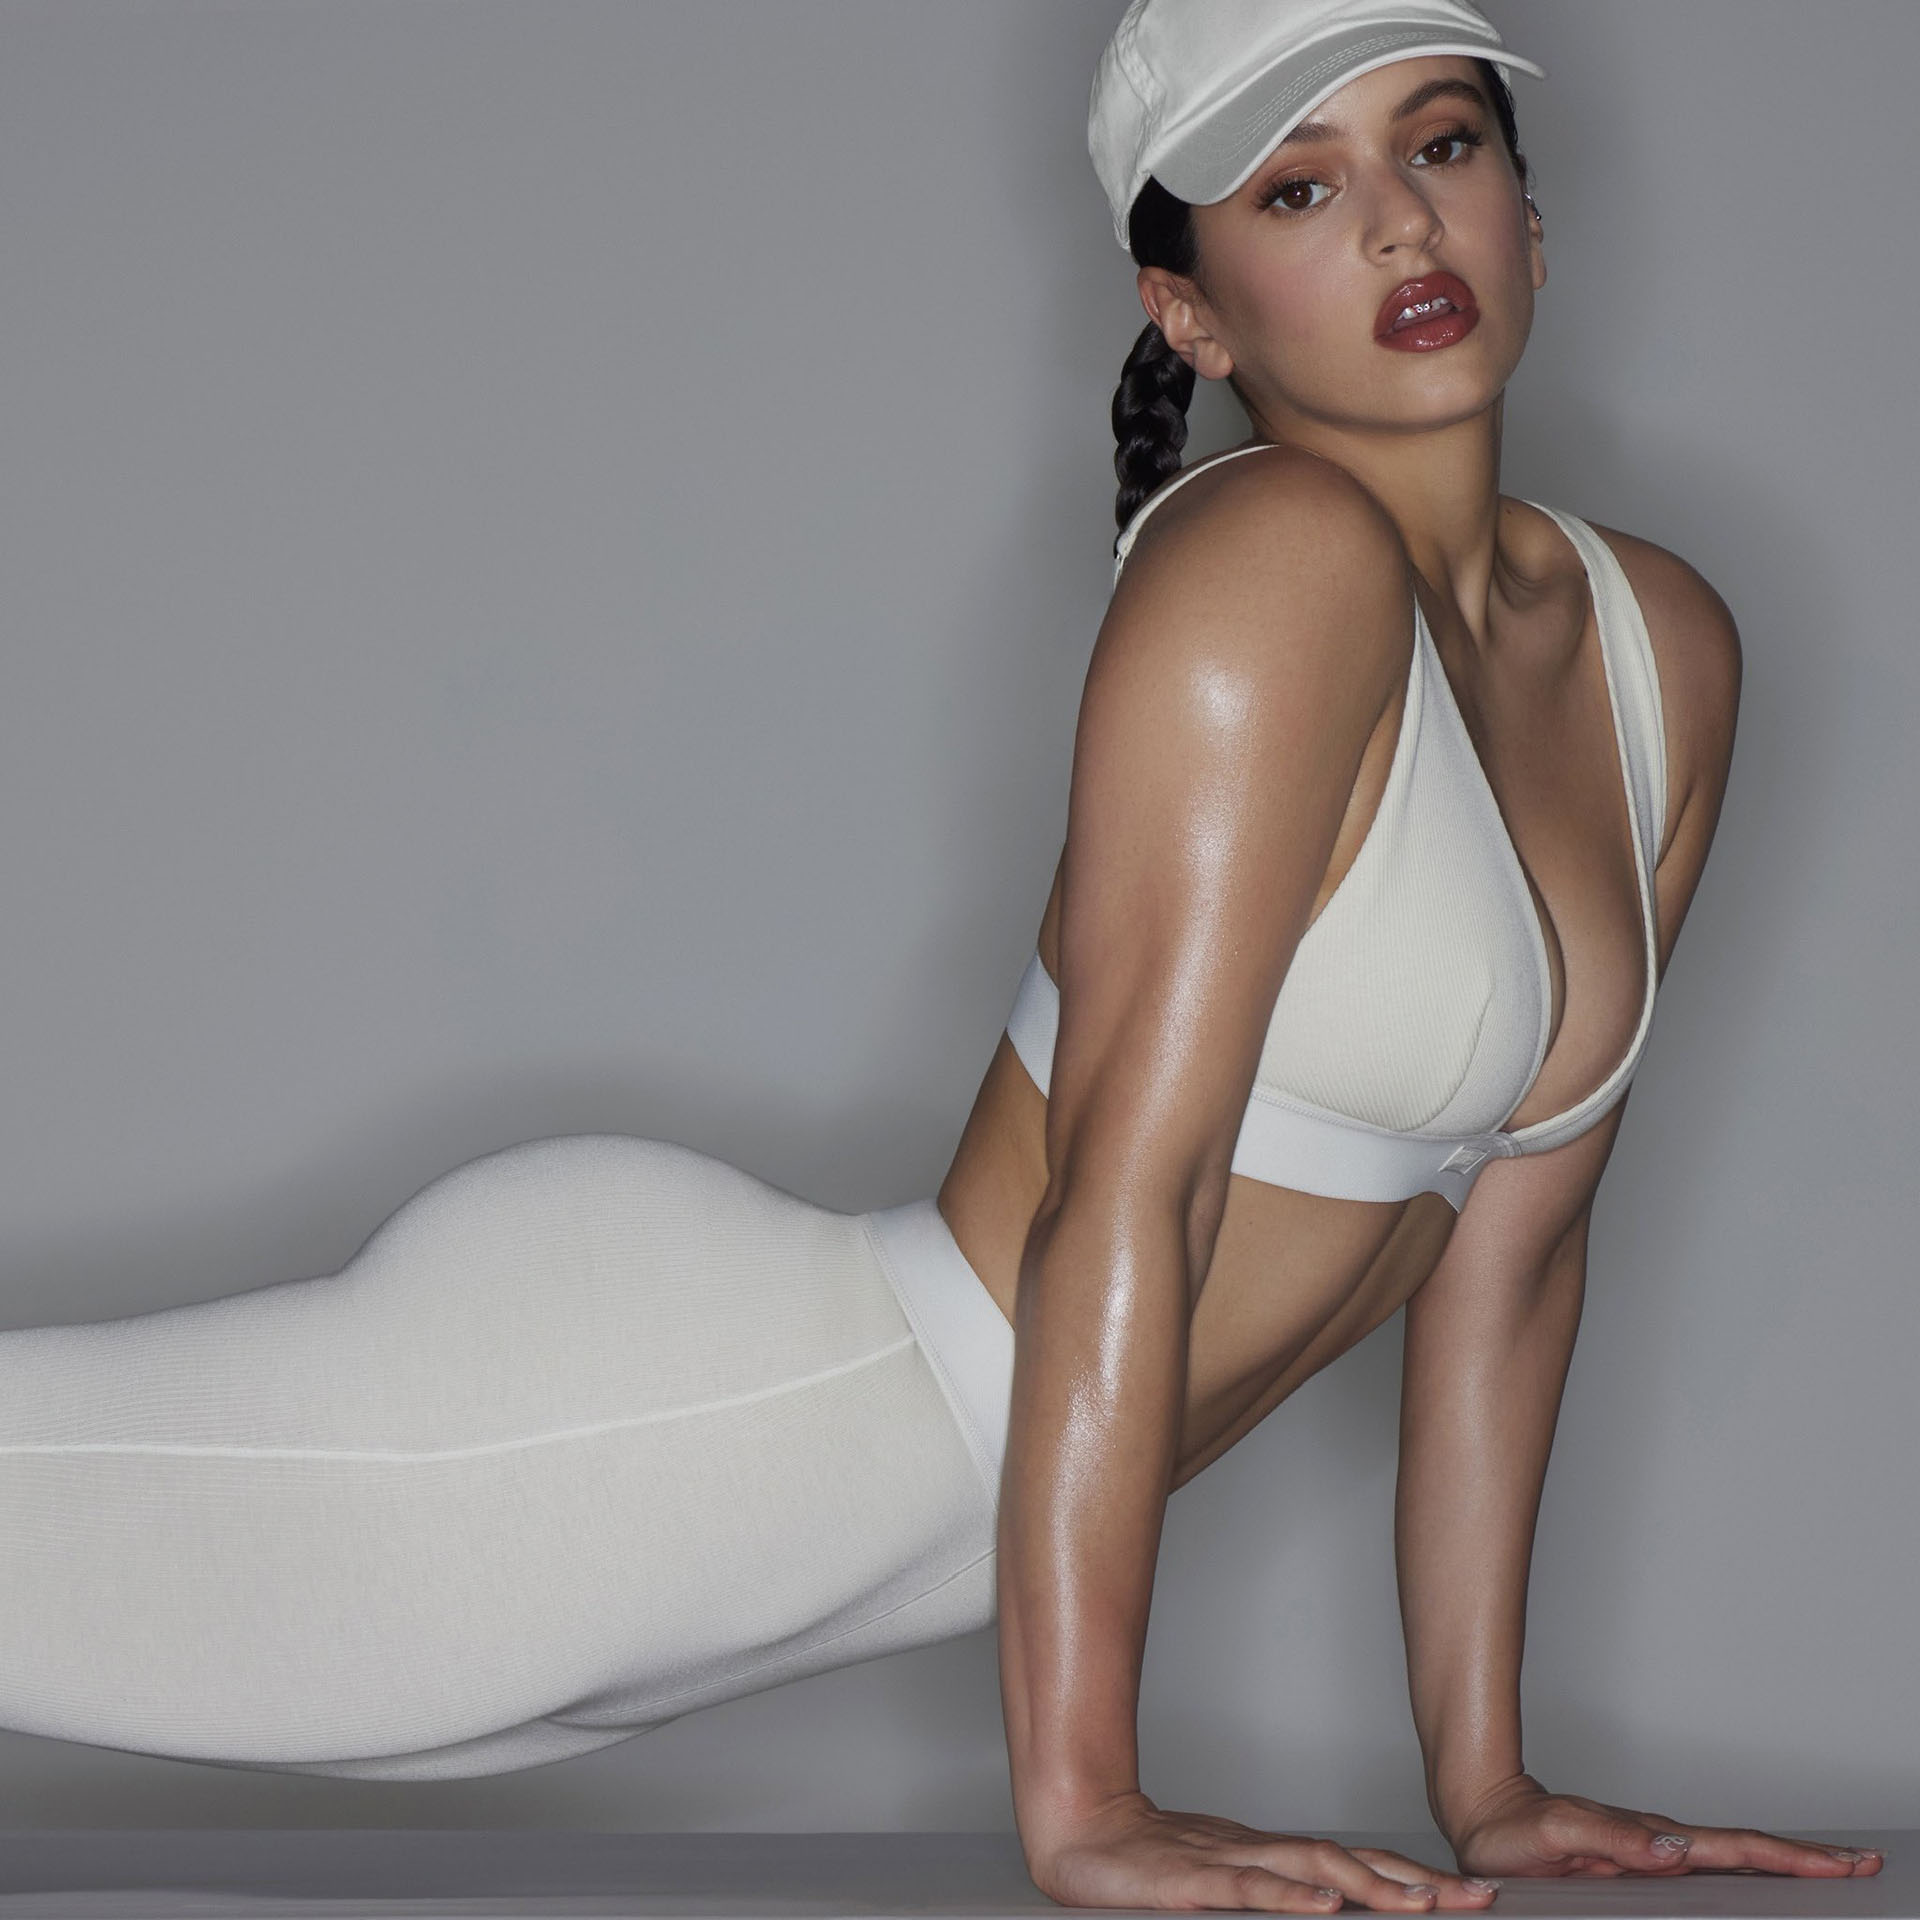 Rosalía se pone la ropa interior de Kim Kardashian